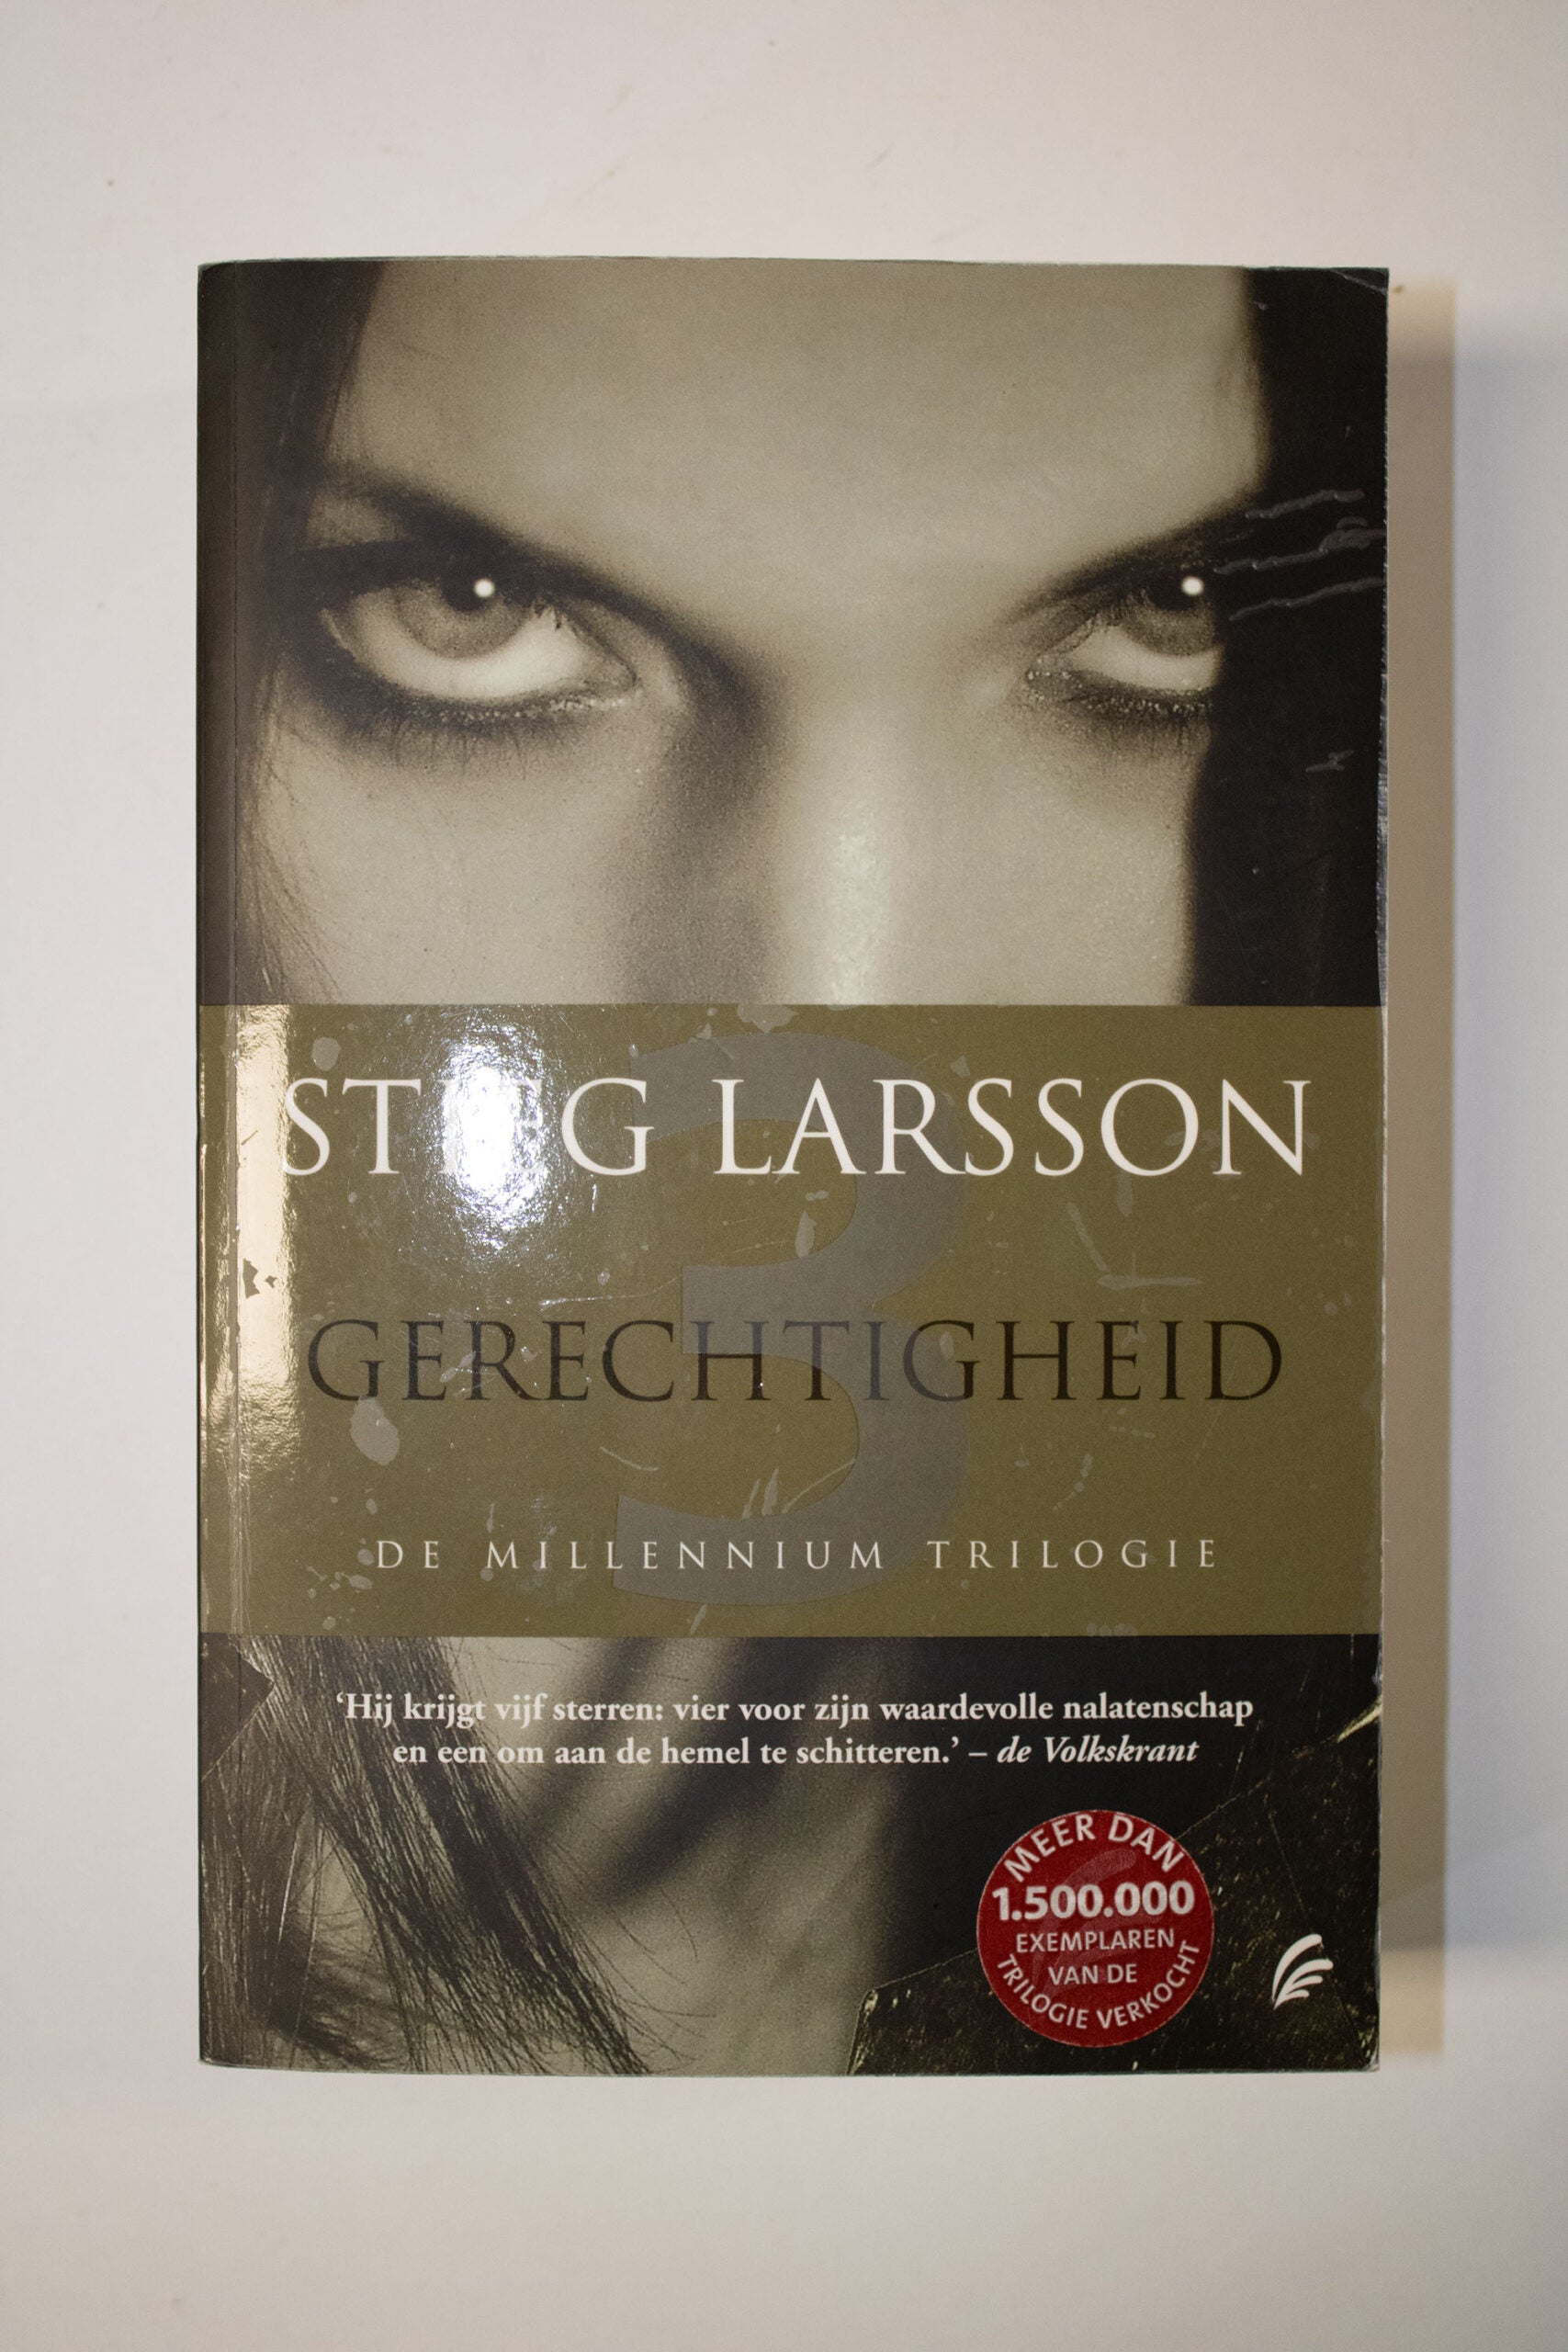 Gerechtigheid trilogie- Stieg Larsson